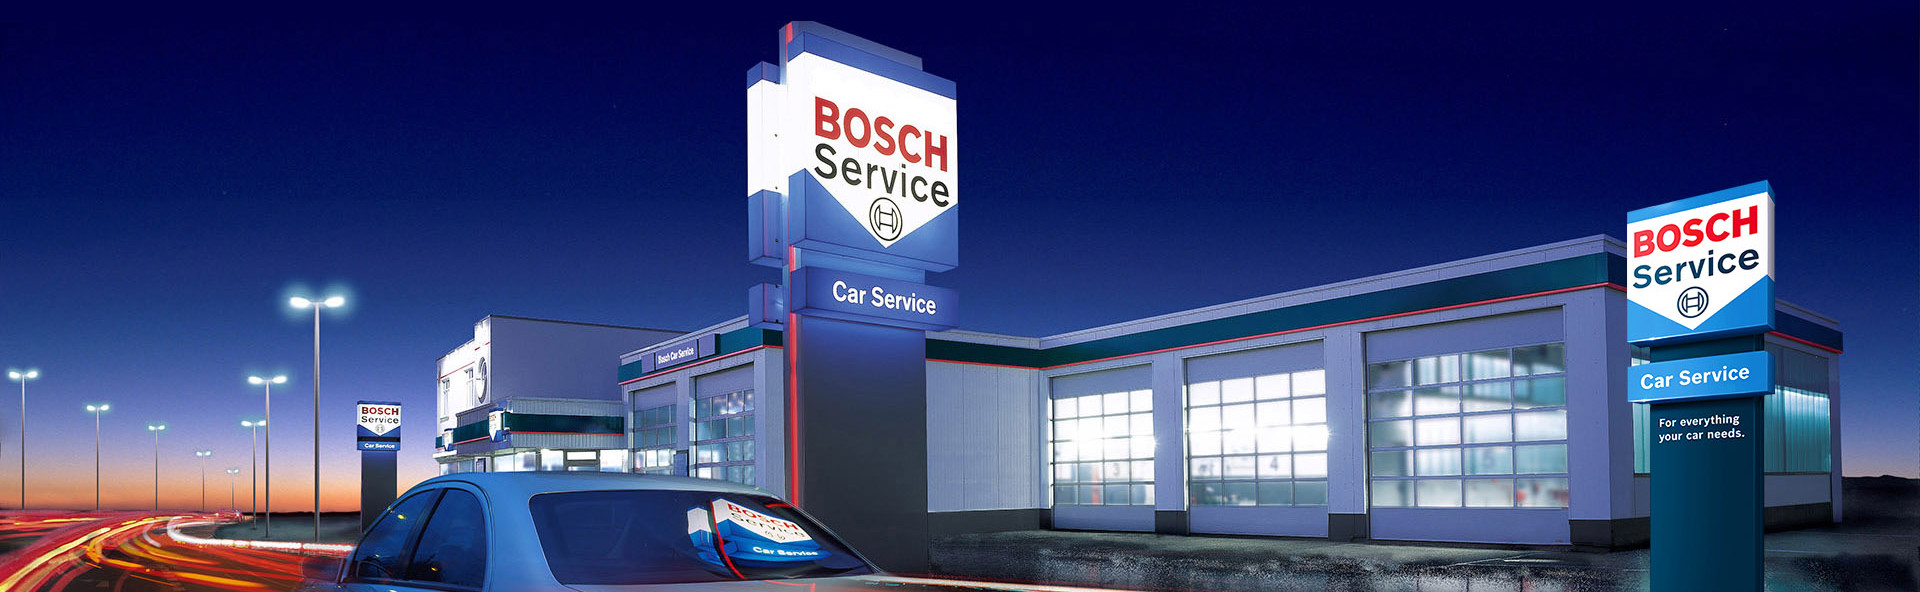 Warsztat mechanika samochodowego Bosch Service